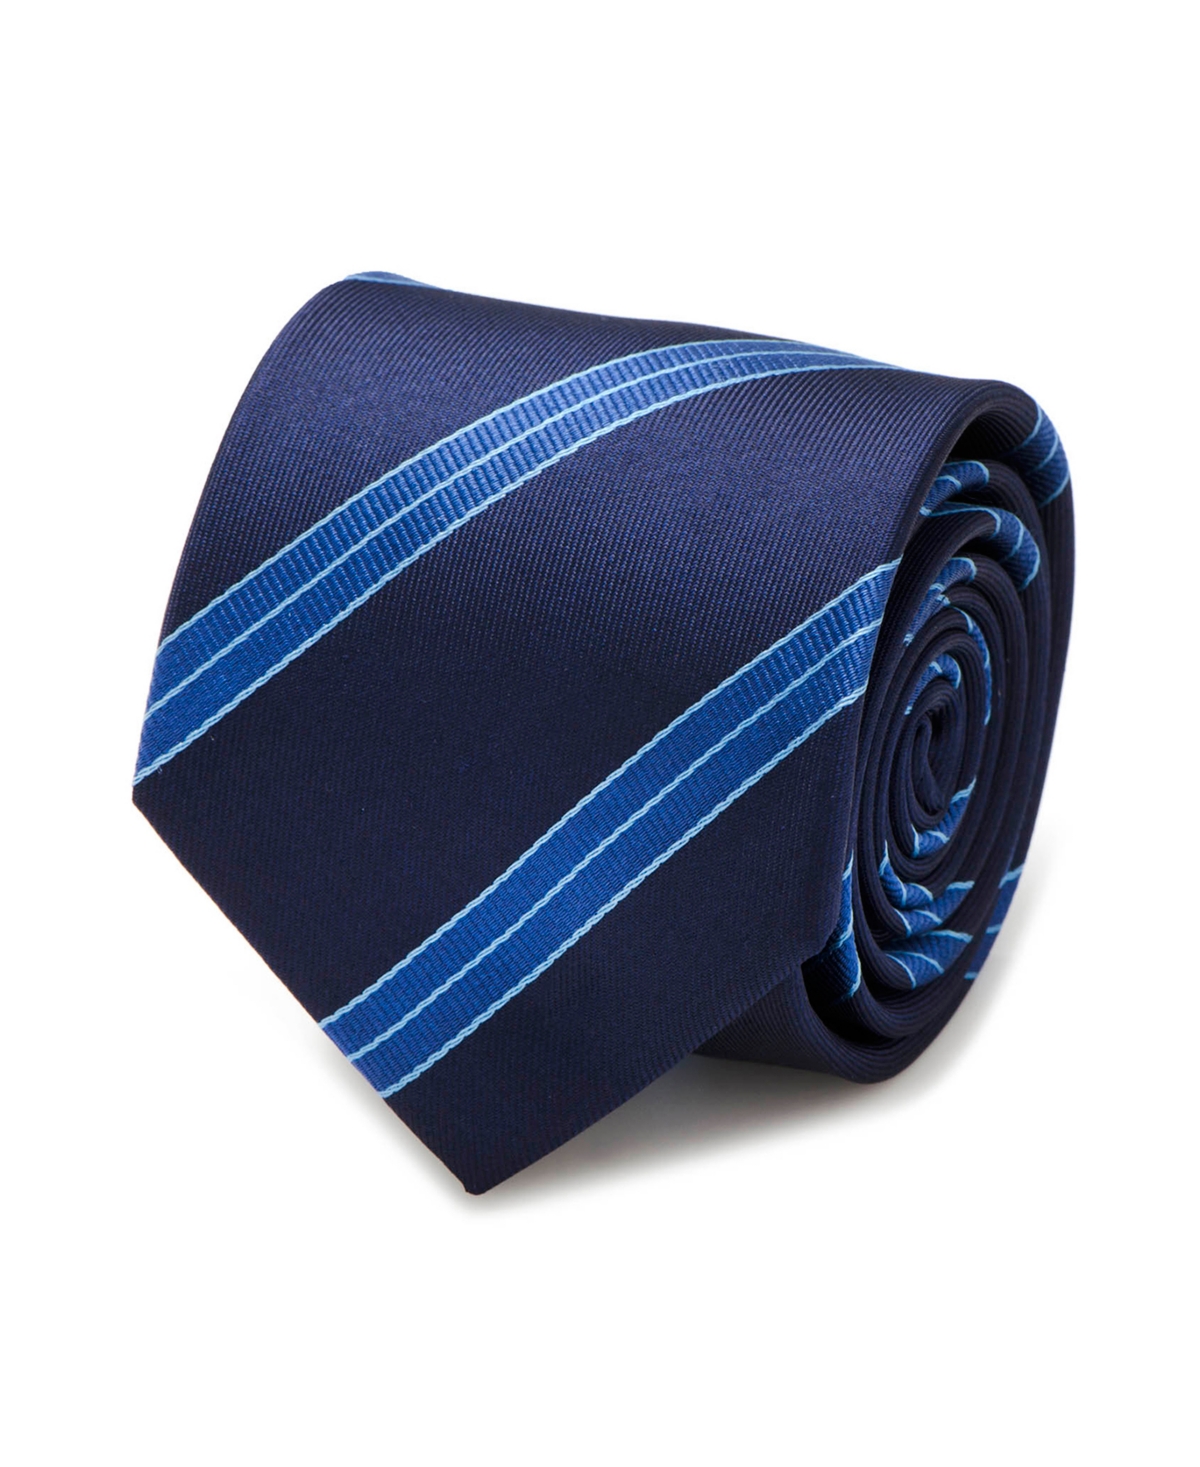 Enterprise Flight Stripe Men's Tie - Blue